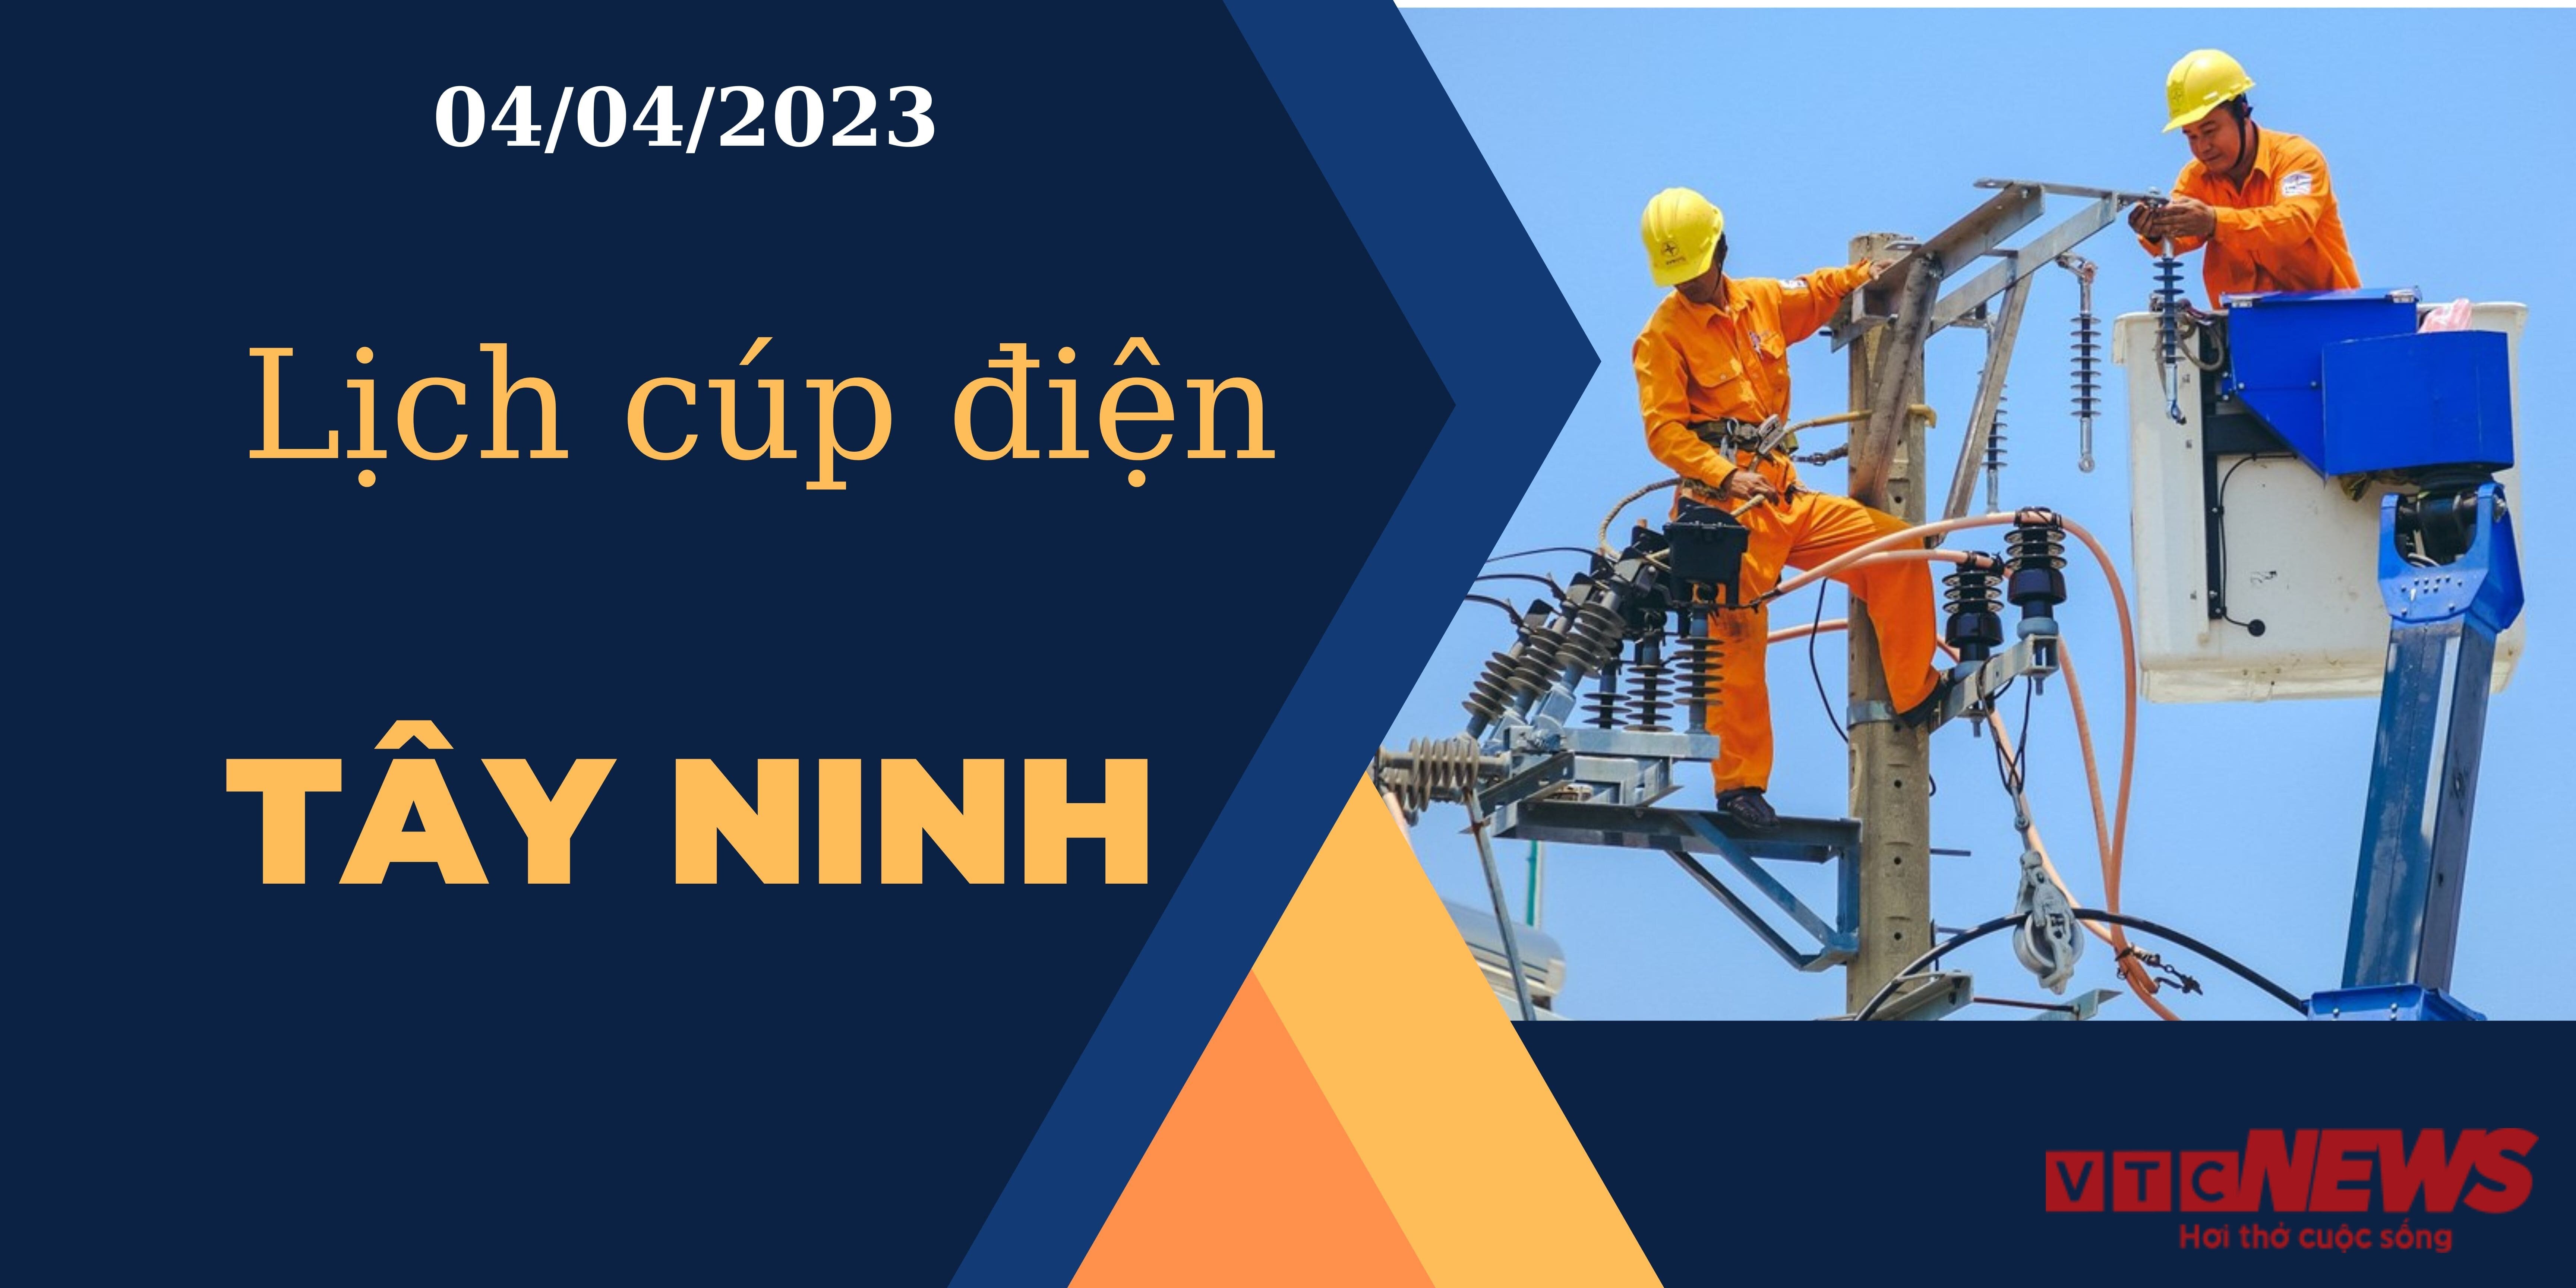 Lịch cúp điện hôm nay tại Tây Ninh ngày 04/04/2023 - 1